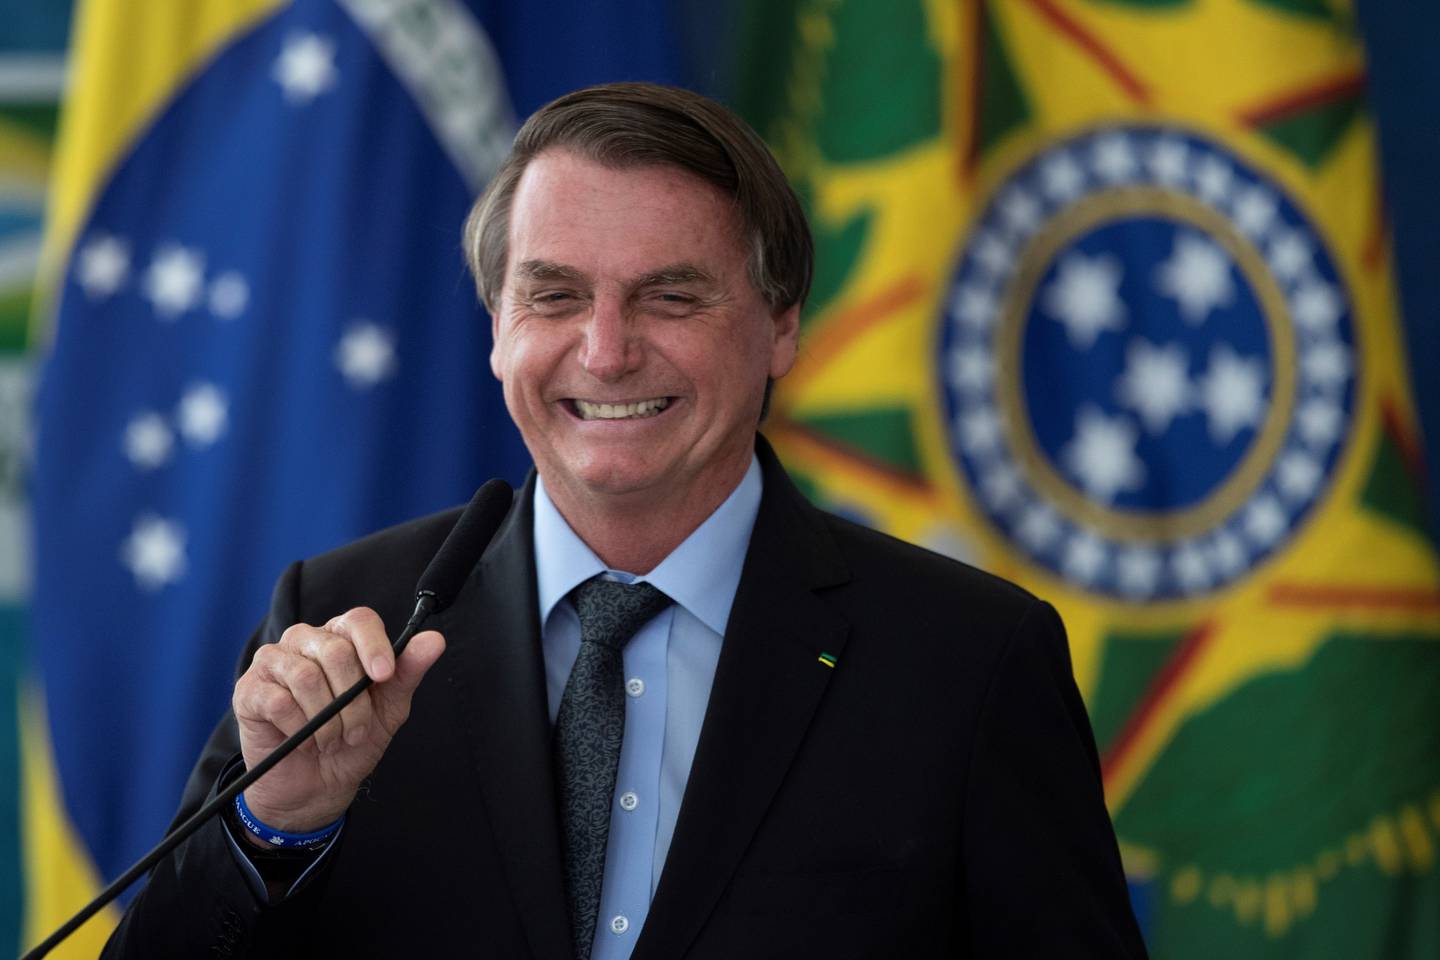 Diretor da CIA disse a Bolsonaro que ele precisa parar de questionar a higidez do sistema eleitoral brasileiro, segundo a Reuters